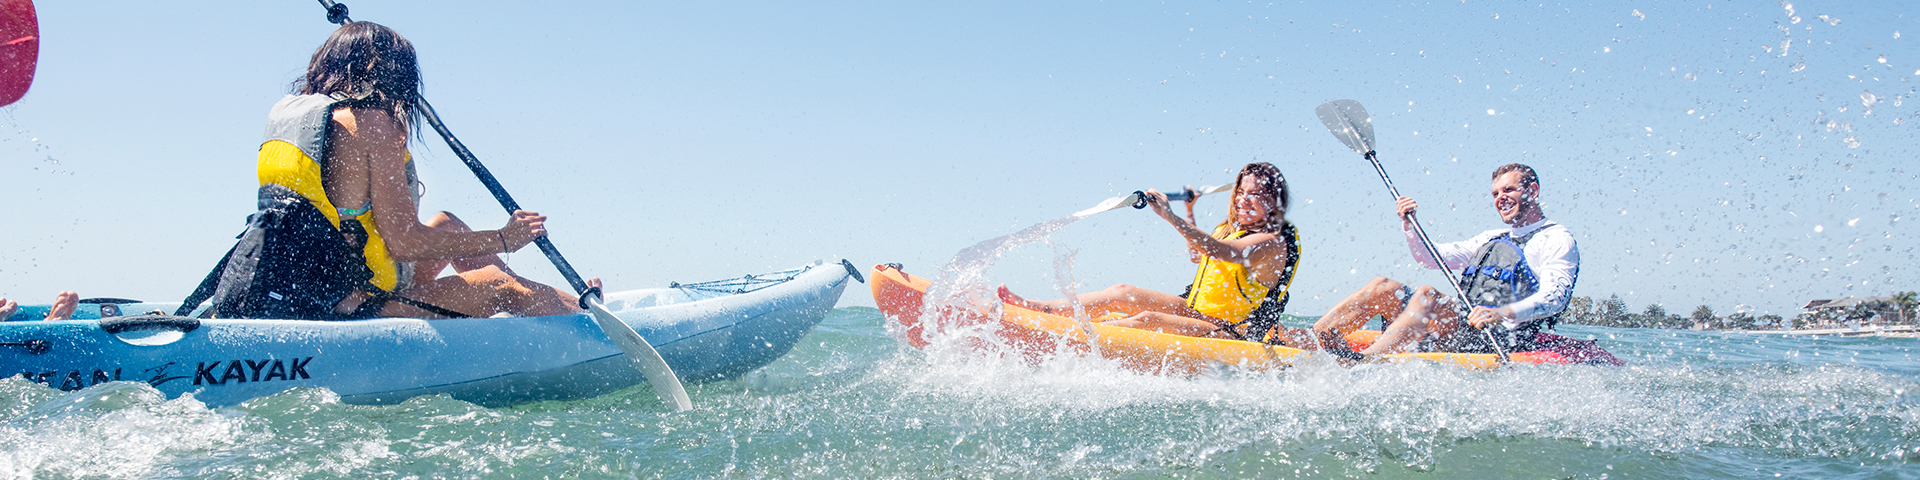 Kayaks: Malibu Two by Ocean Kayak - Image 4422